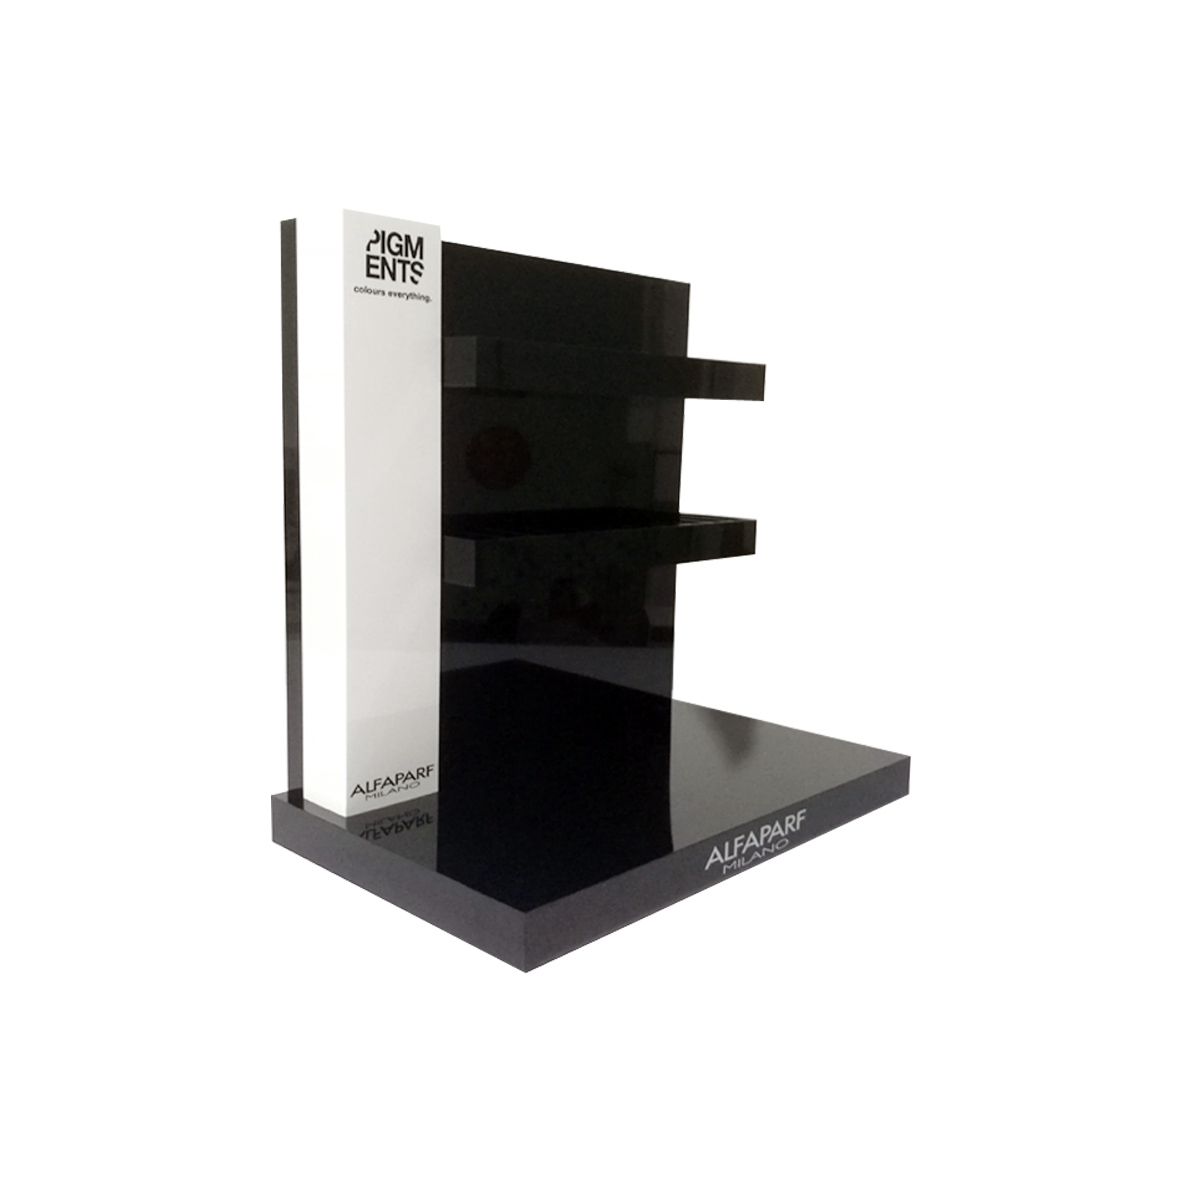 Acrylic nail polish display stand/pabango countertop display rack